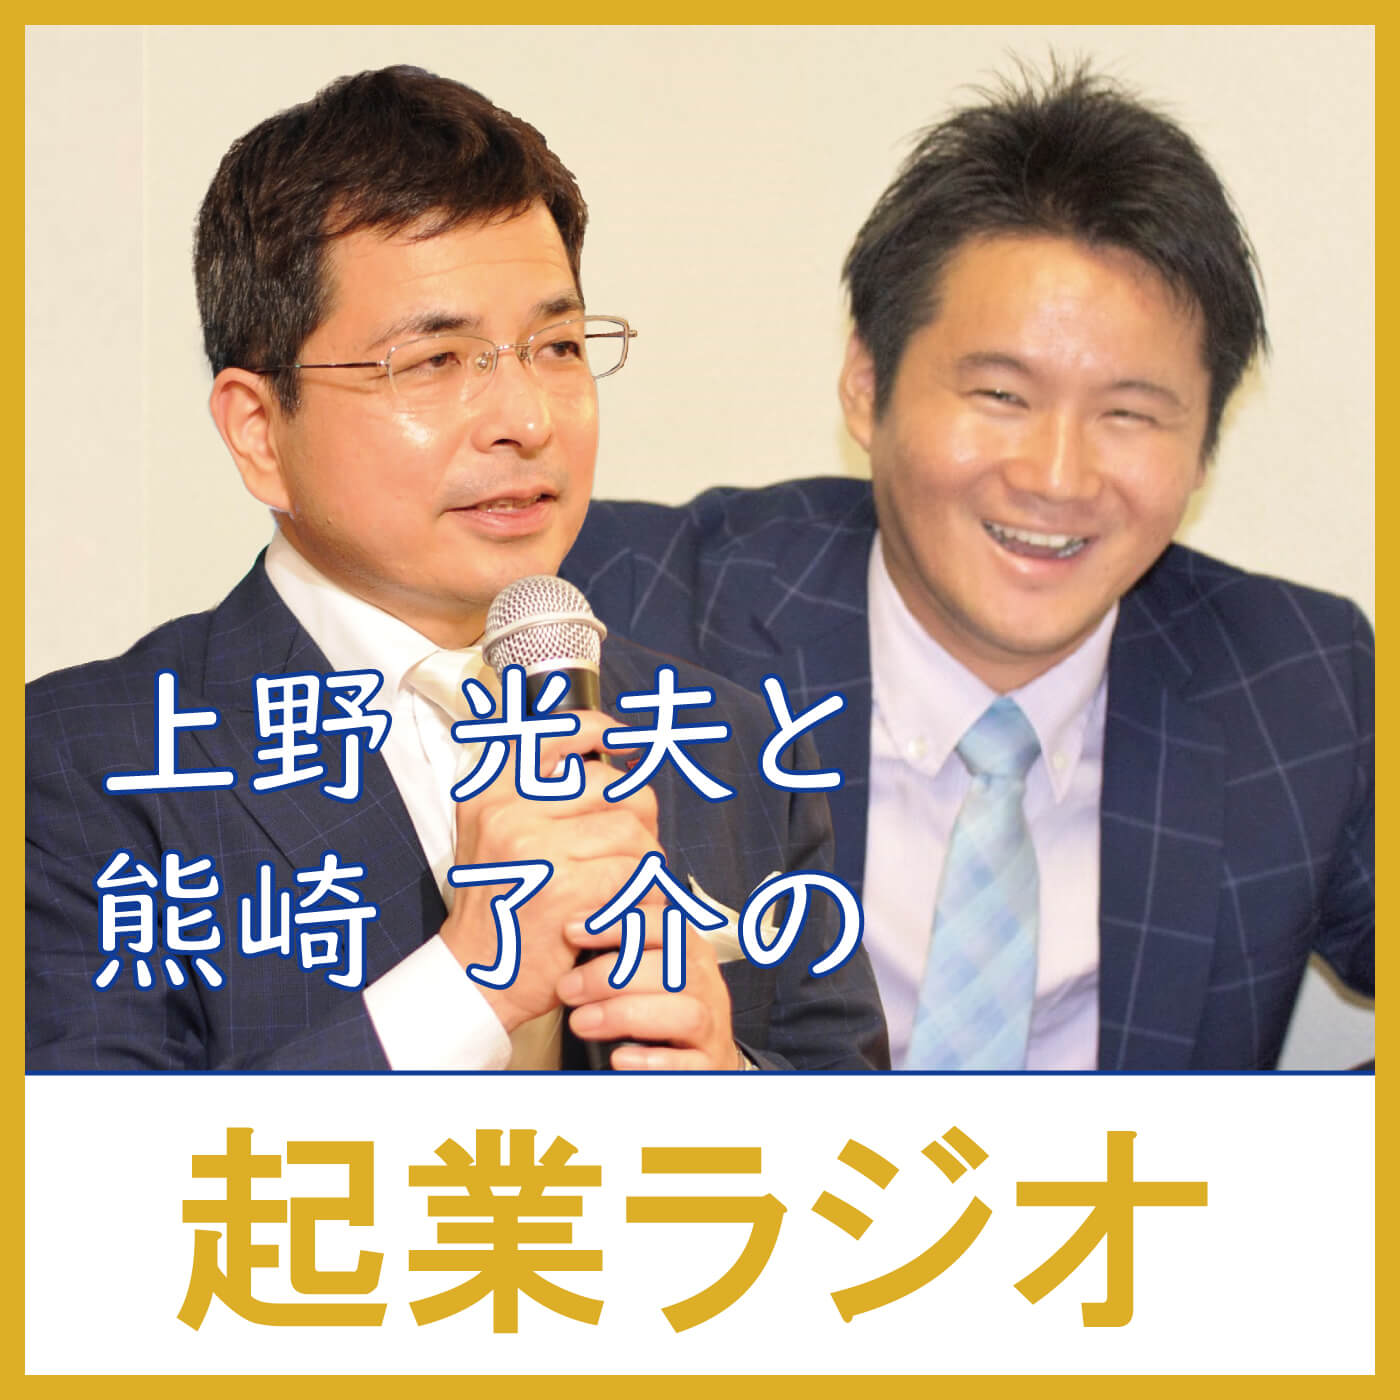 上野光夫と熊崎了介の起業ラジオ